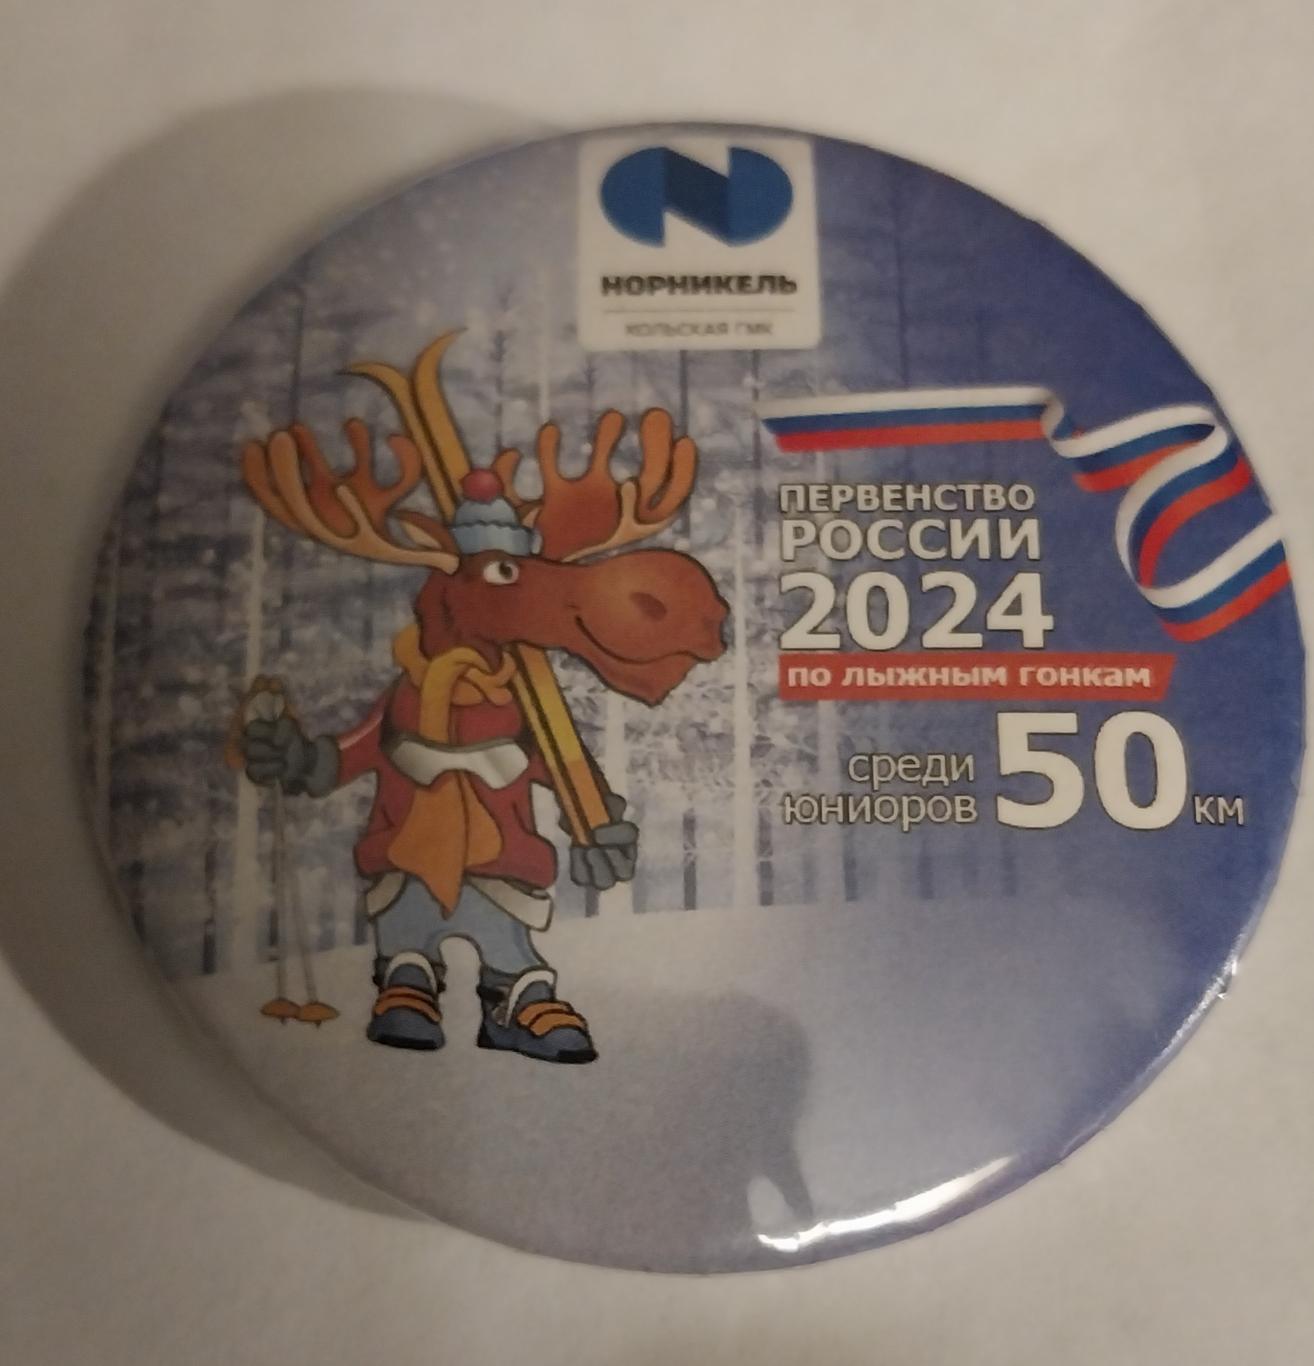 Первенство России по лыжным гонкам среди юниоров 2024 50 км Мончегорск